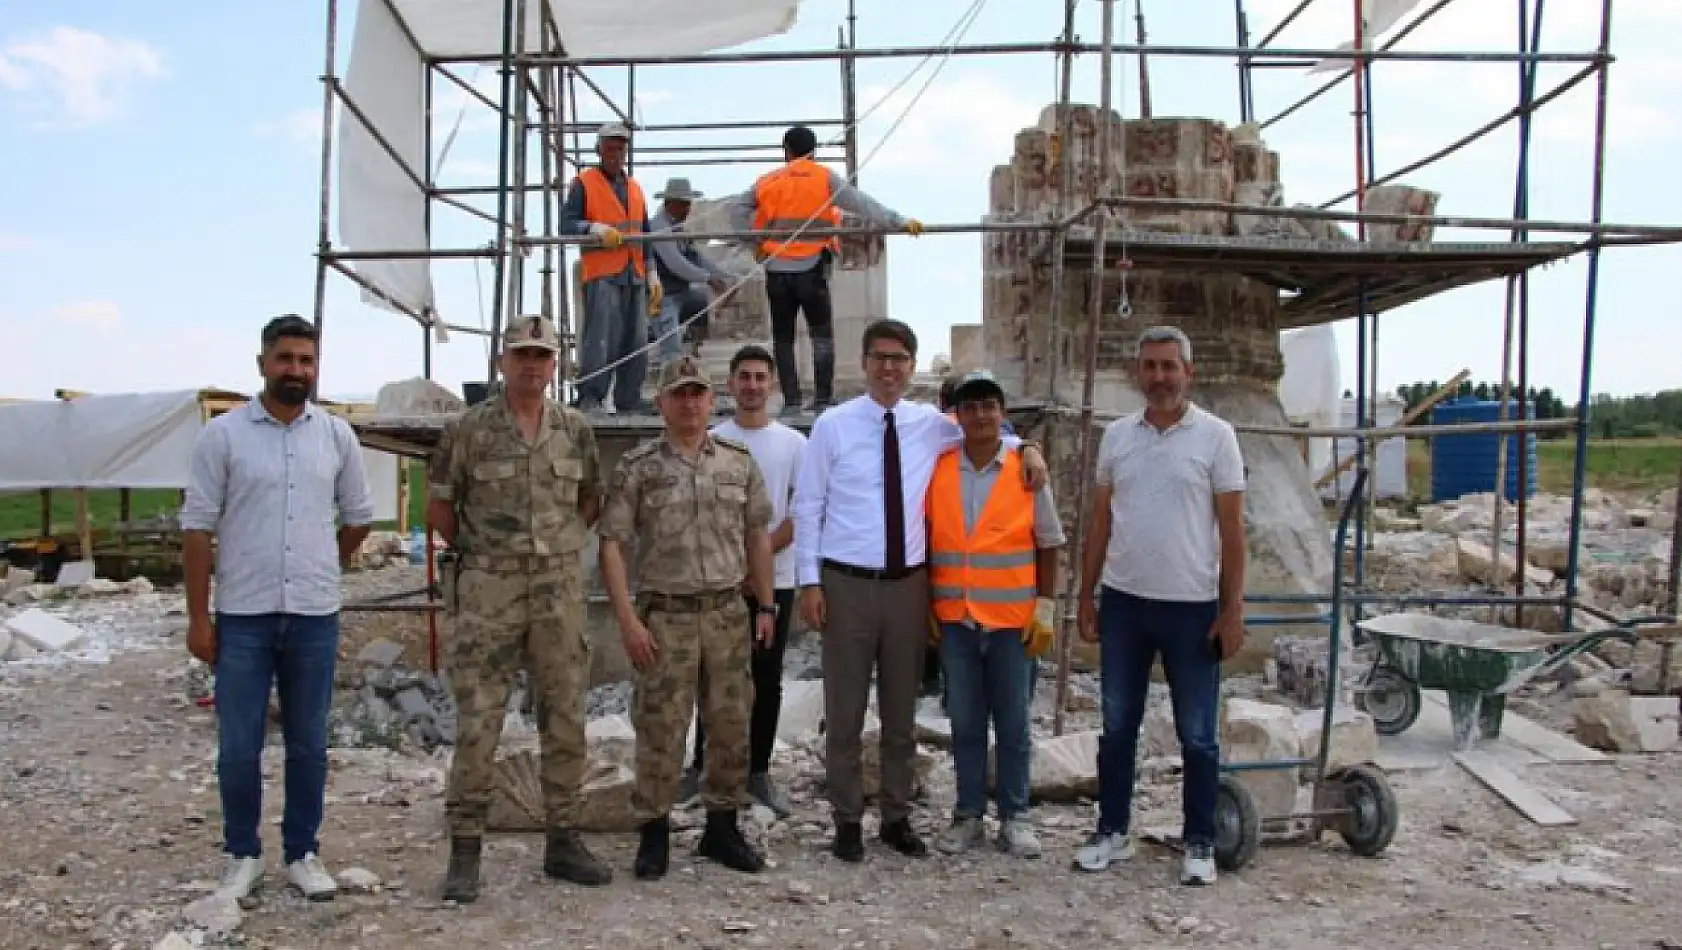 Kara Yusuf Paşa Kümbetinde restorasyon çalışması devam ediyor